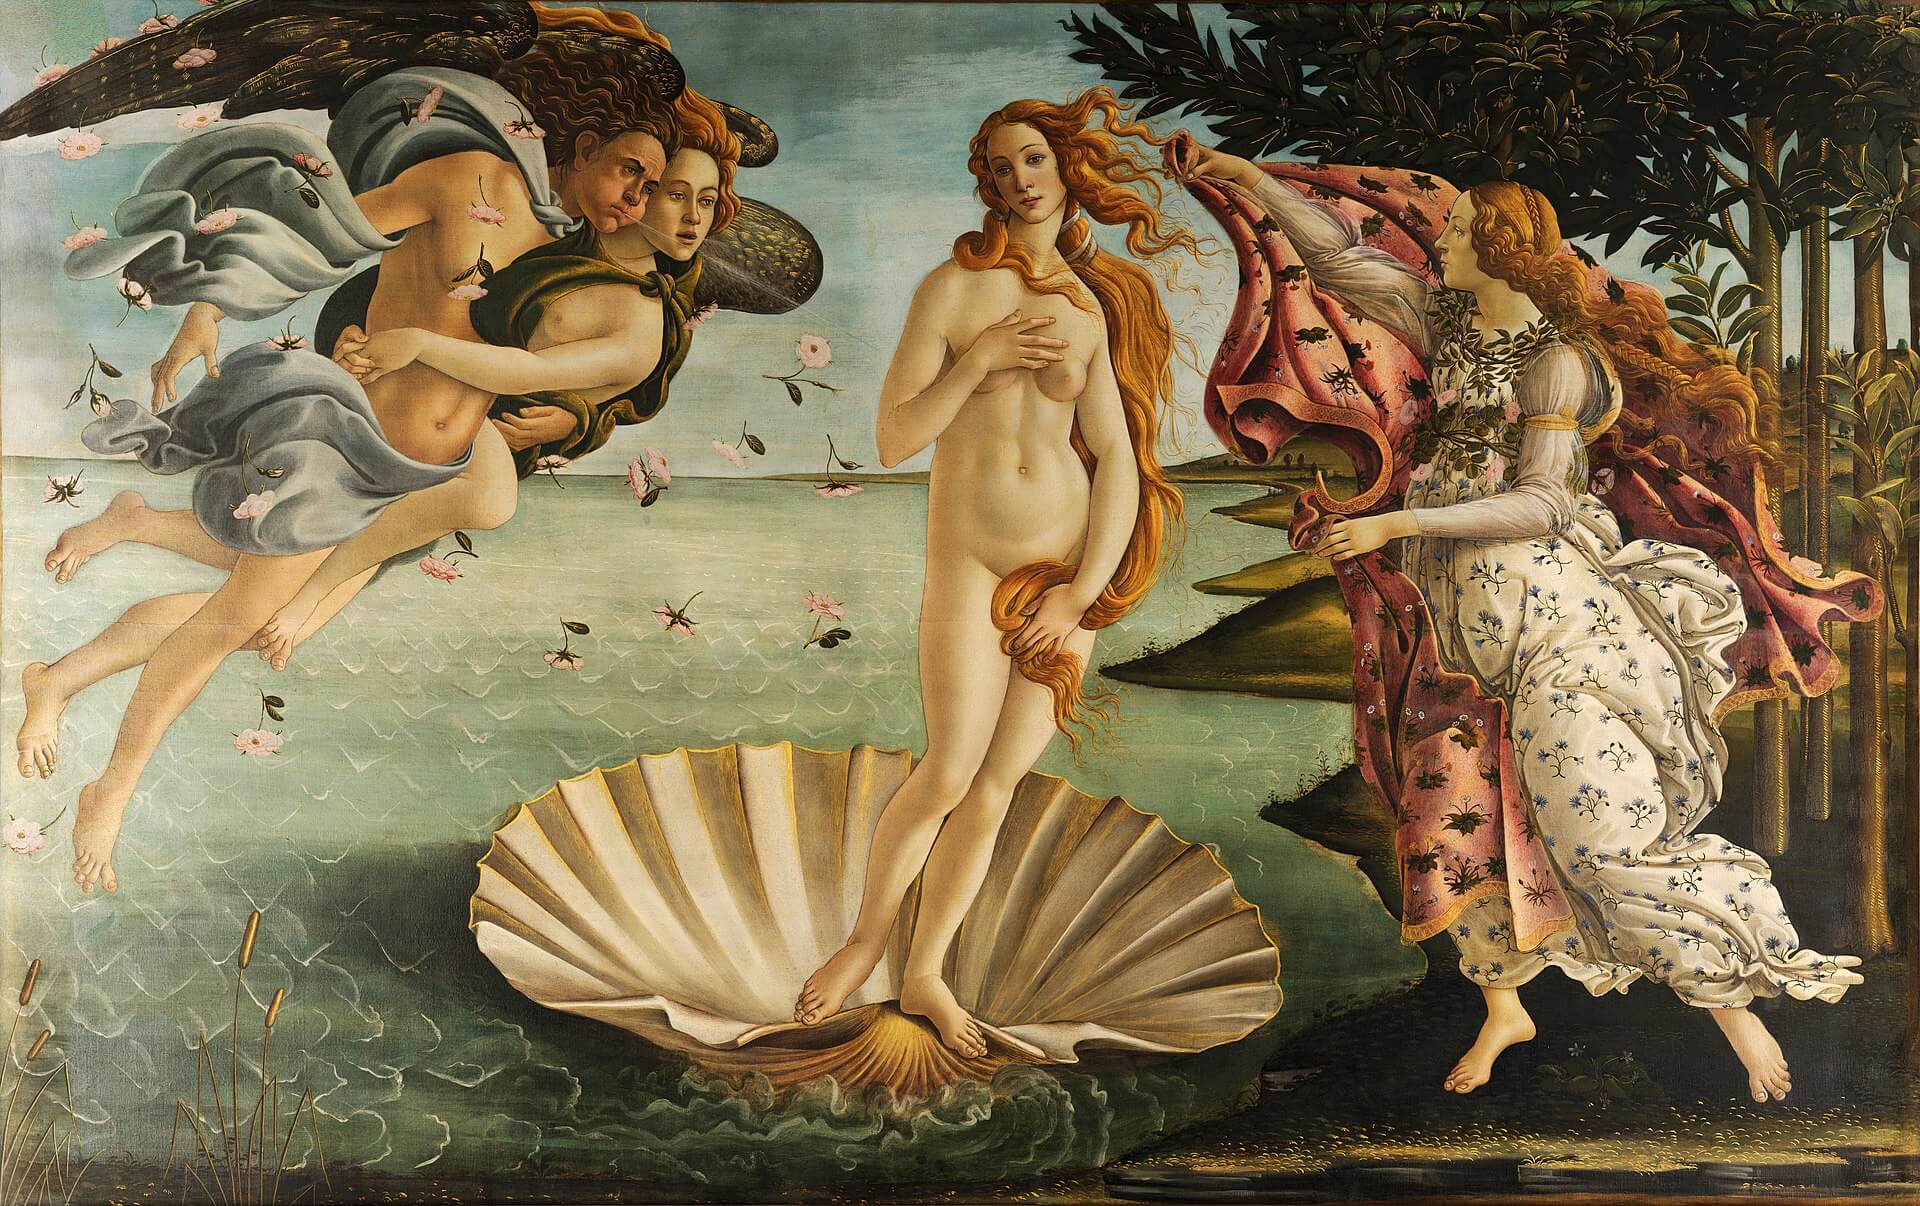 《維納斯的誕生》(The Birth of Venus)